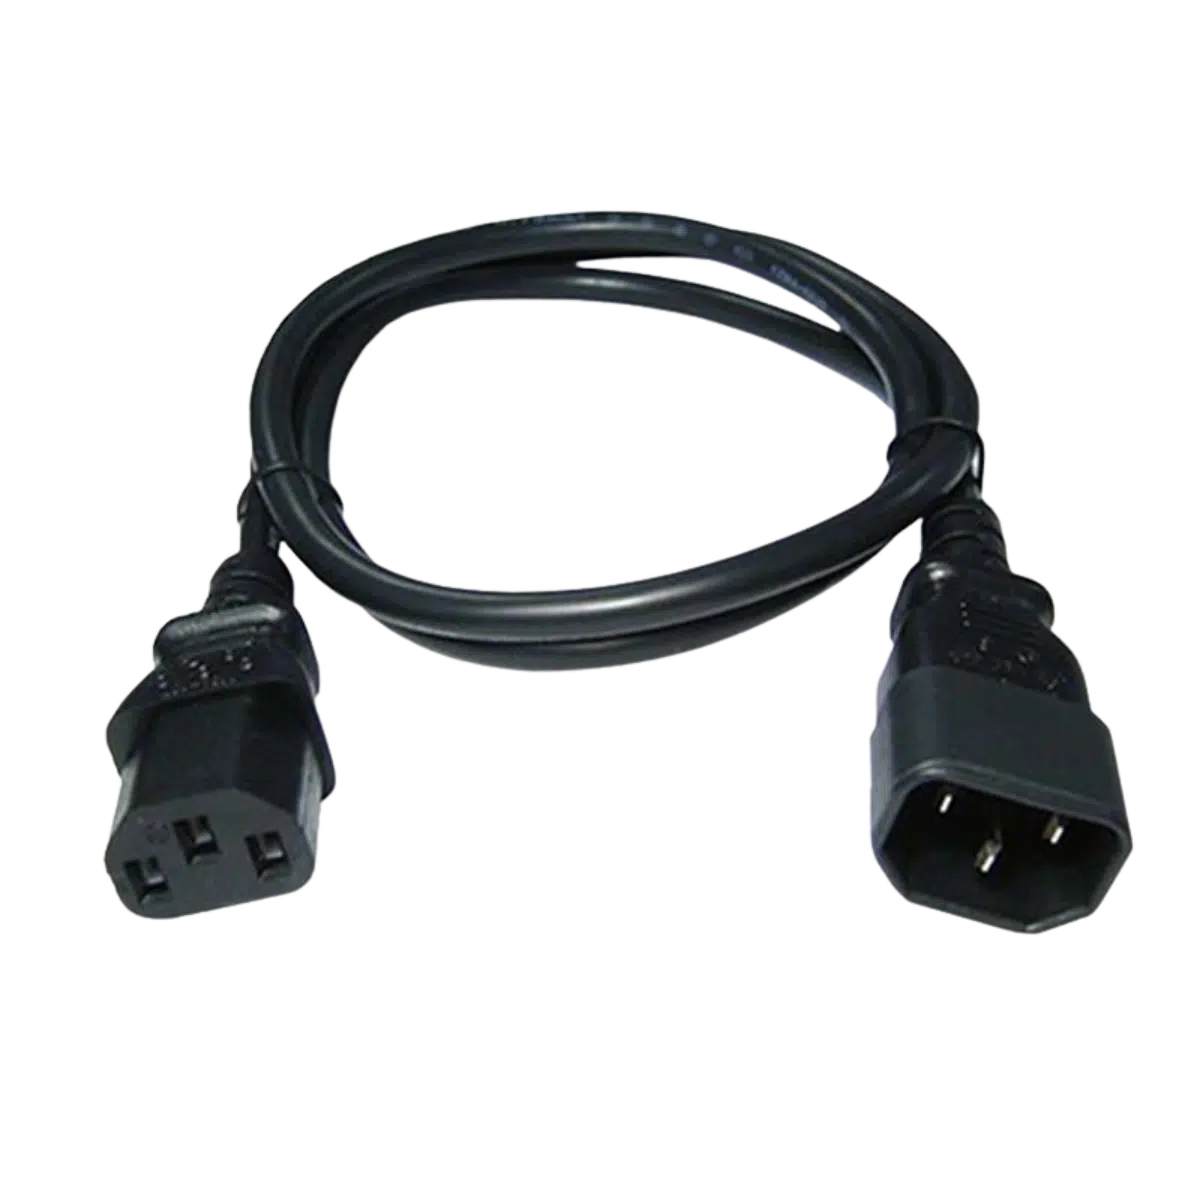 Connectie kabel C14 – C13